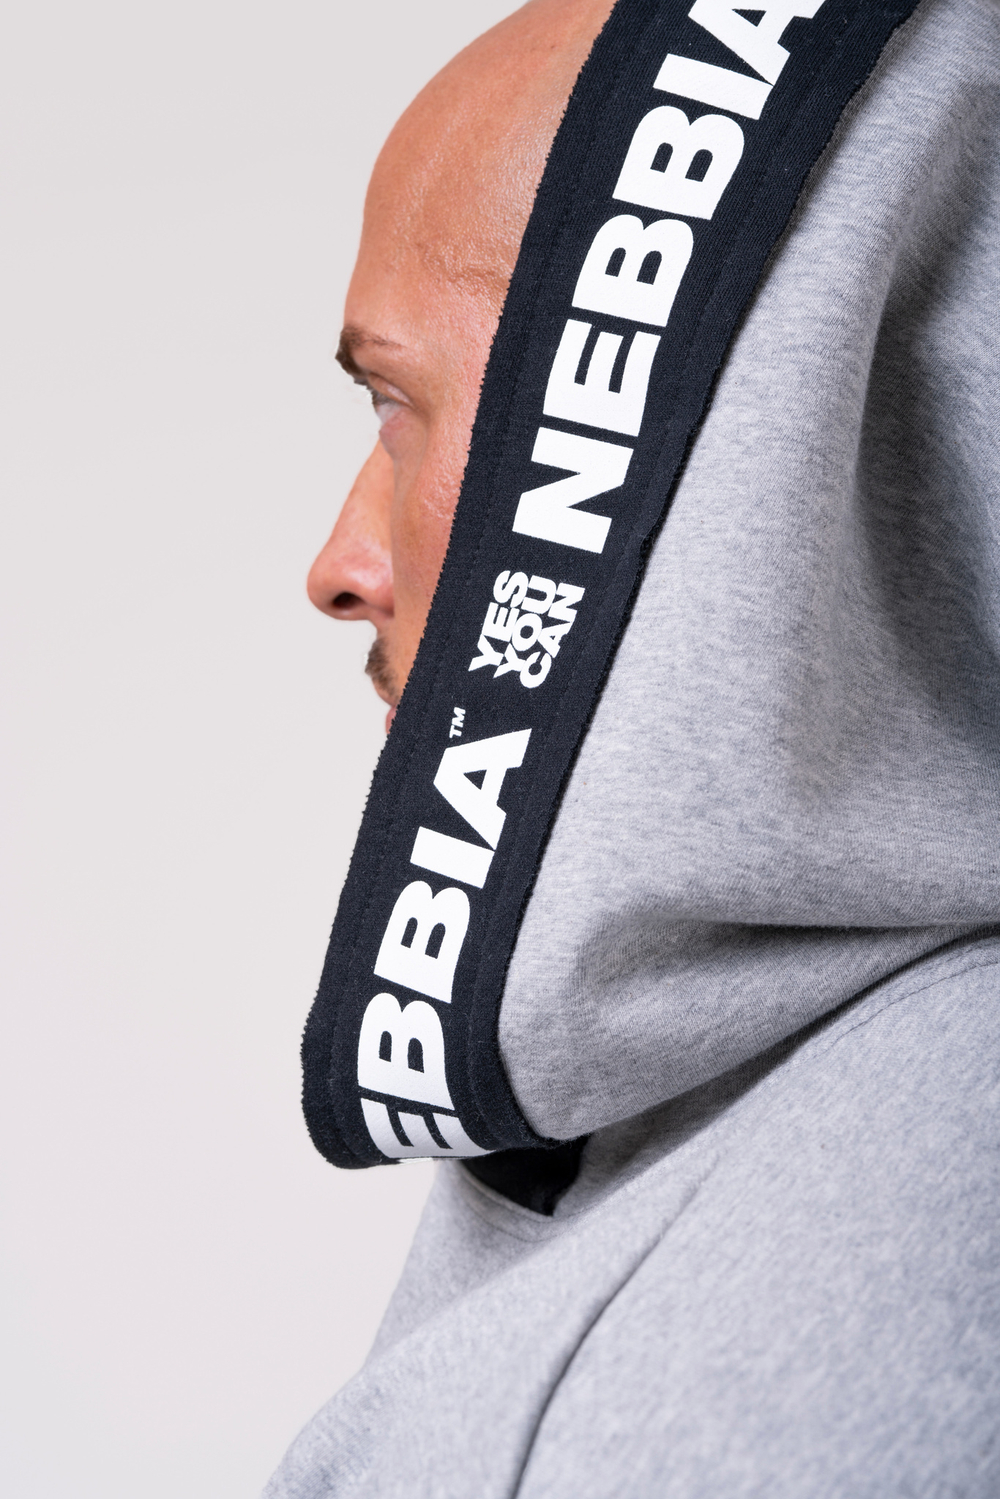 Мужская футболка Nebbia Reg top with hoodie 175 light grey